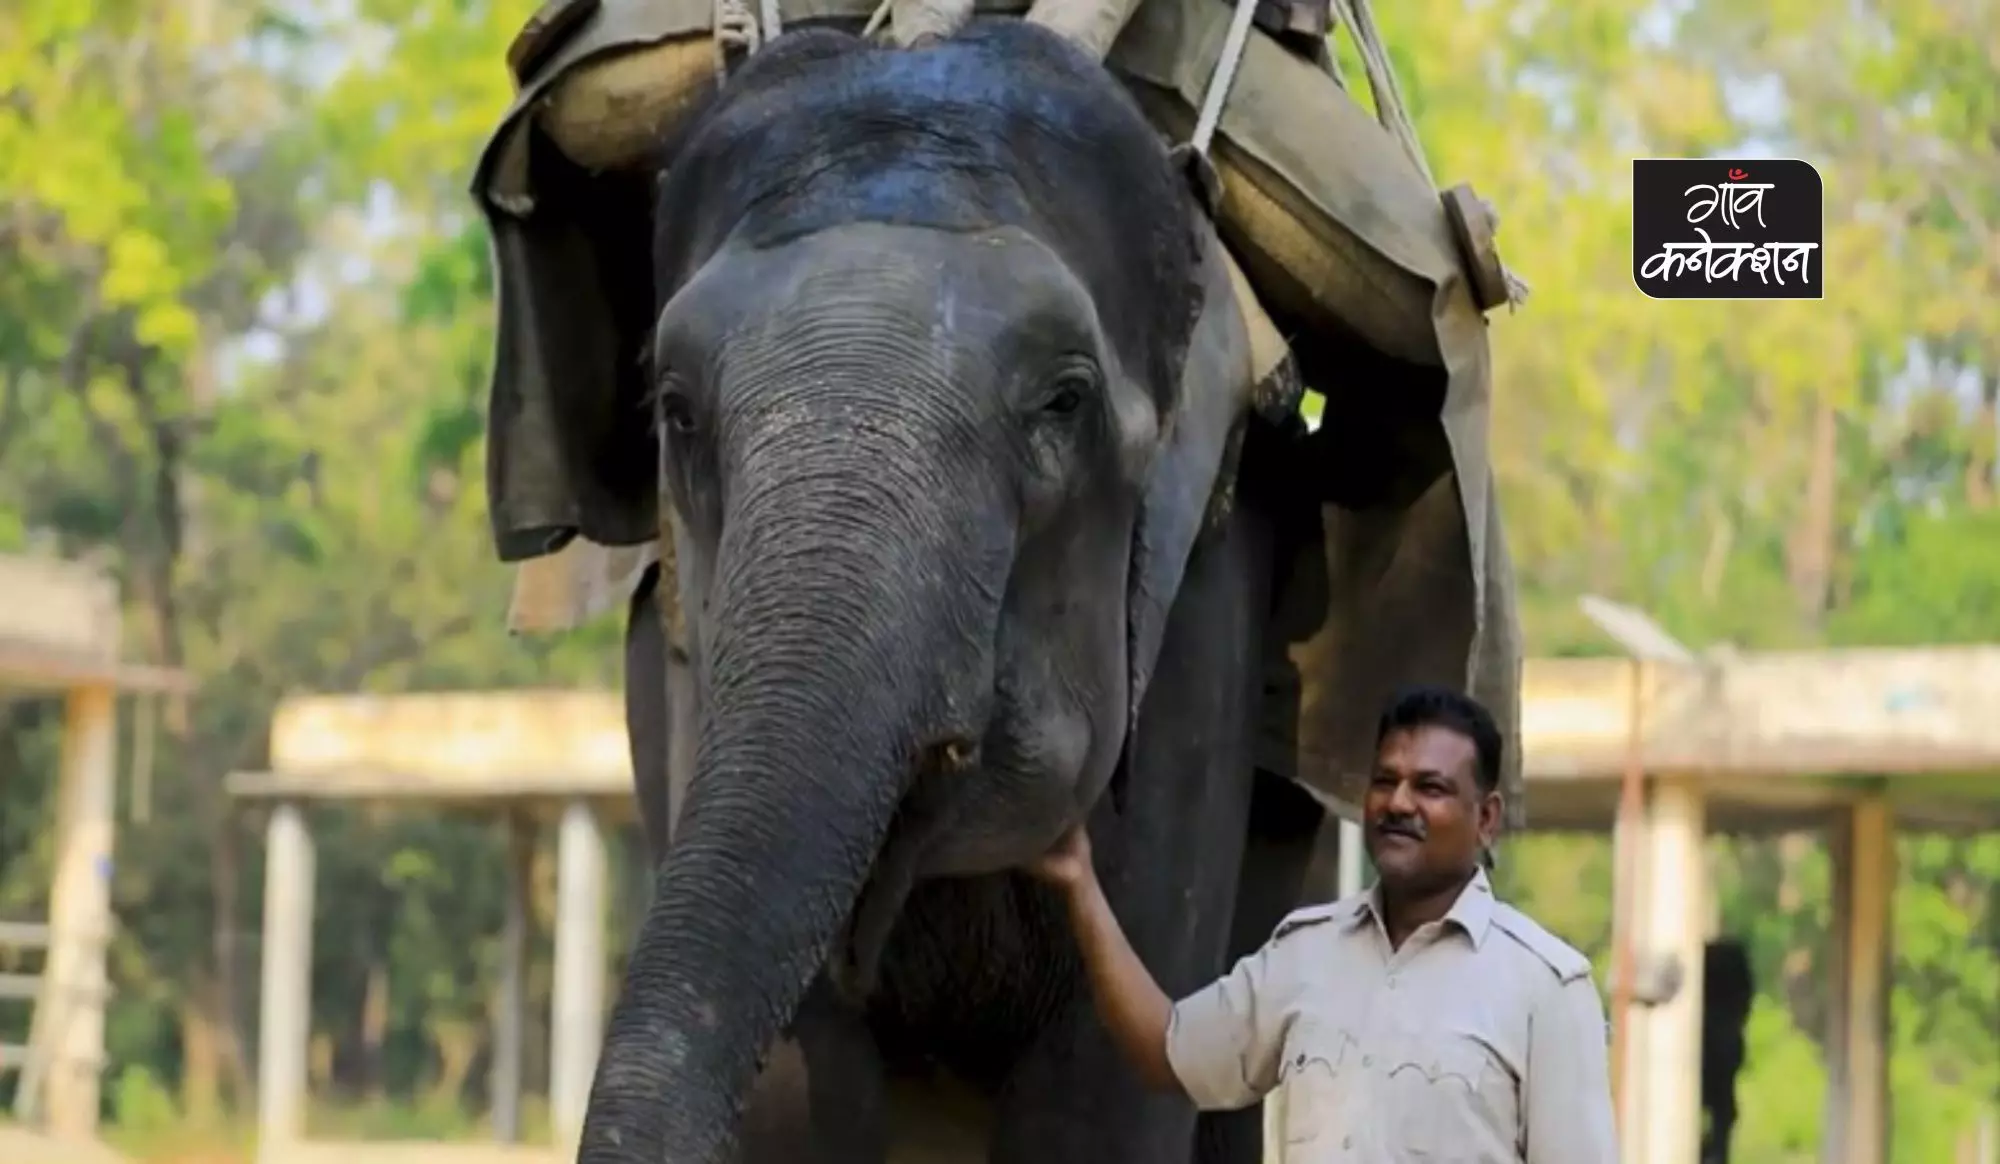 सुलोचना और अयूब: हाथी और महावत के बीच प्यार का अटूट बंधन